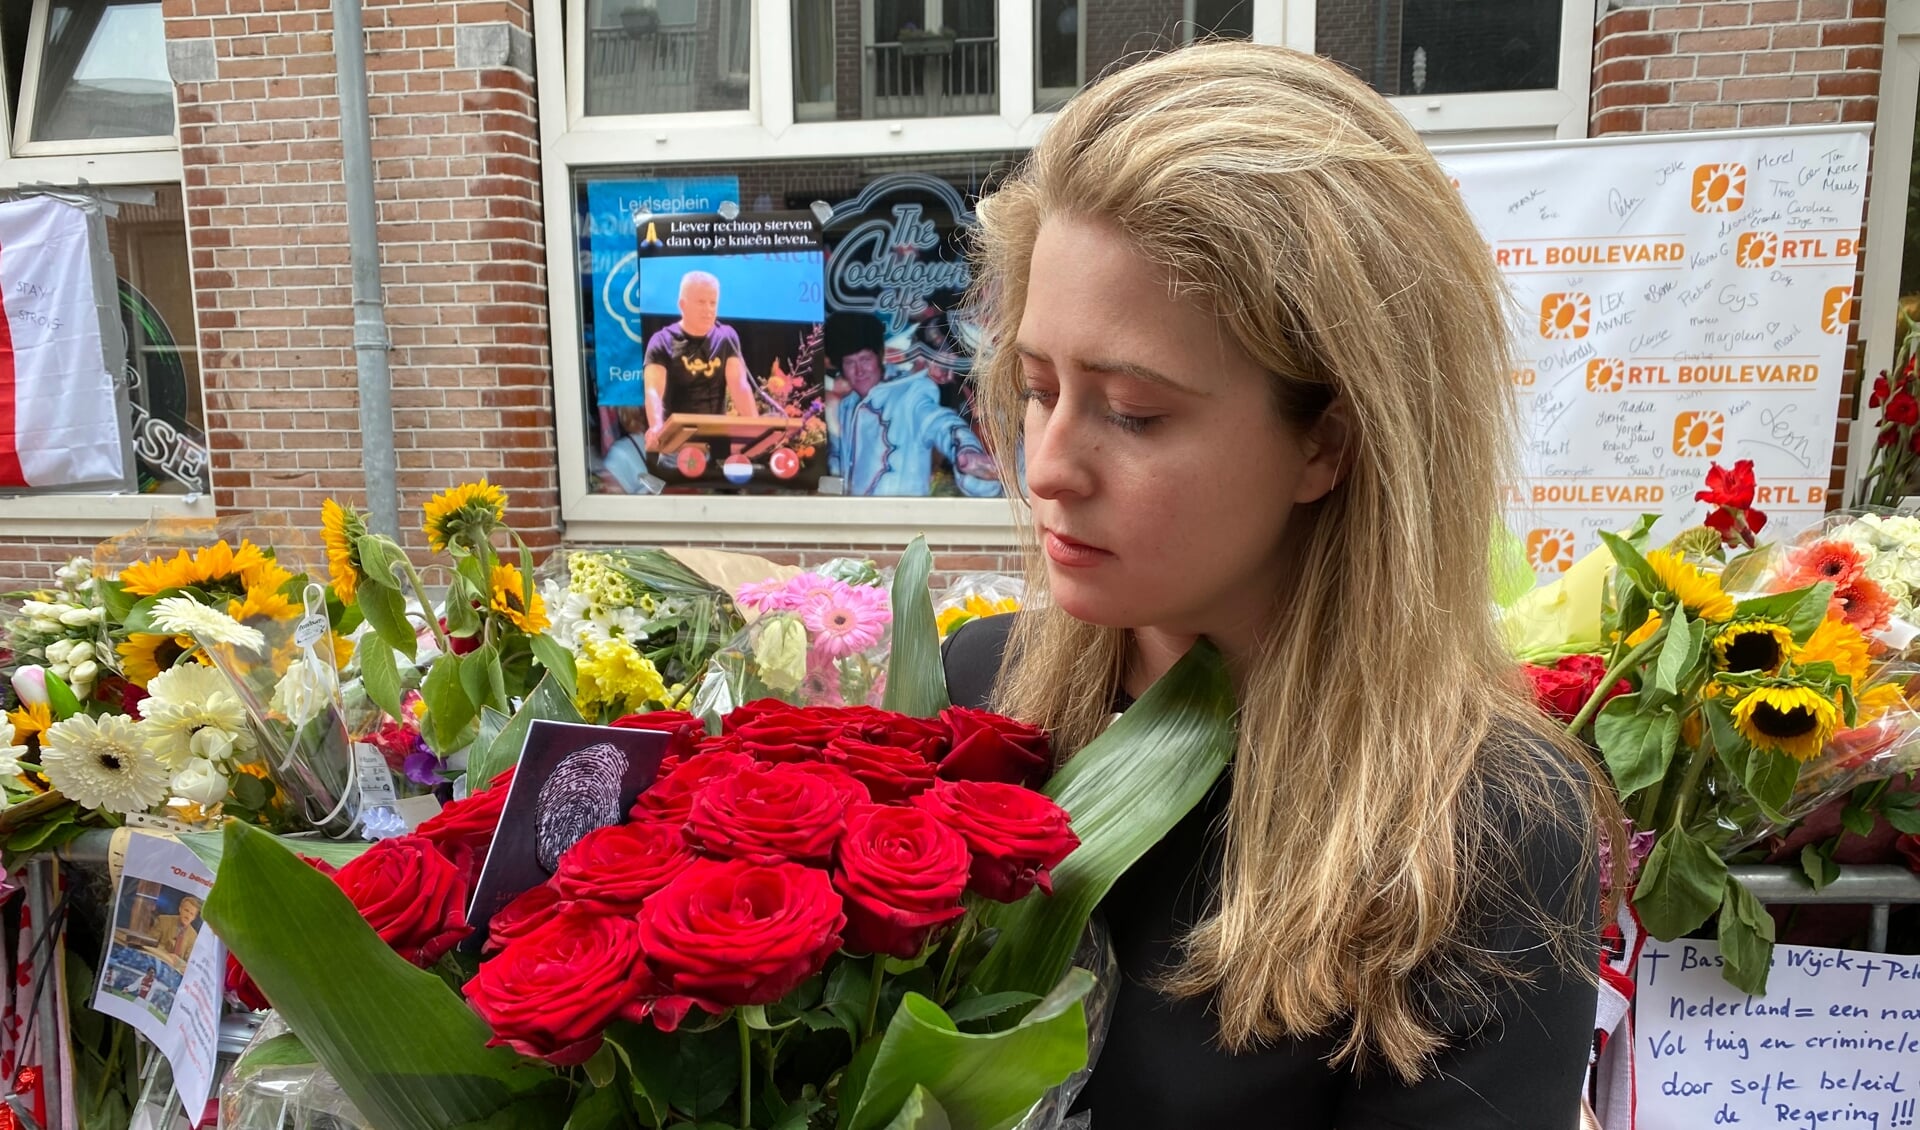 Nathalie de Bruin met een bos rode rozen op de plek waar Peter R. de Vries in Amsterdam werd neergeschoten.